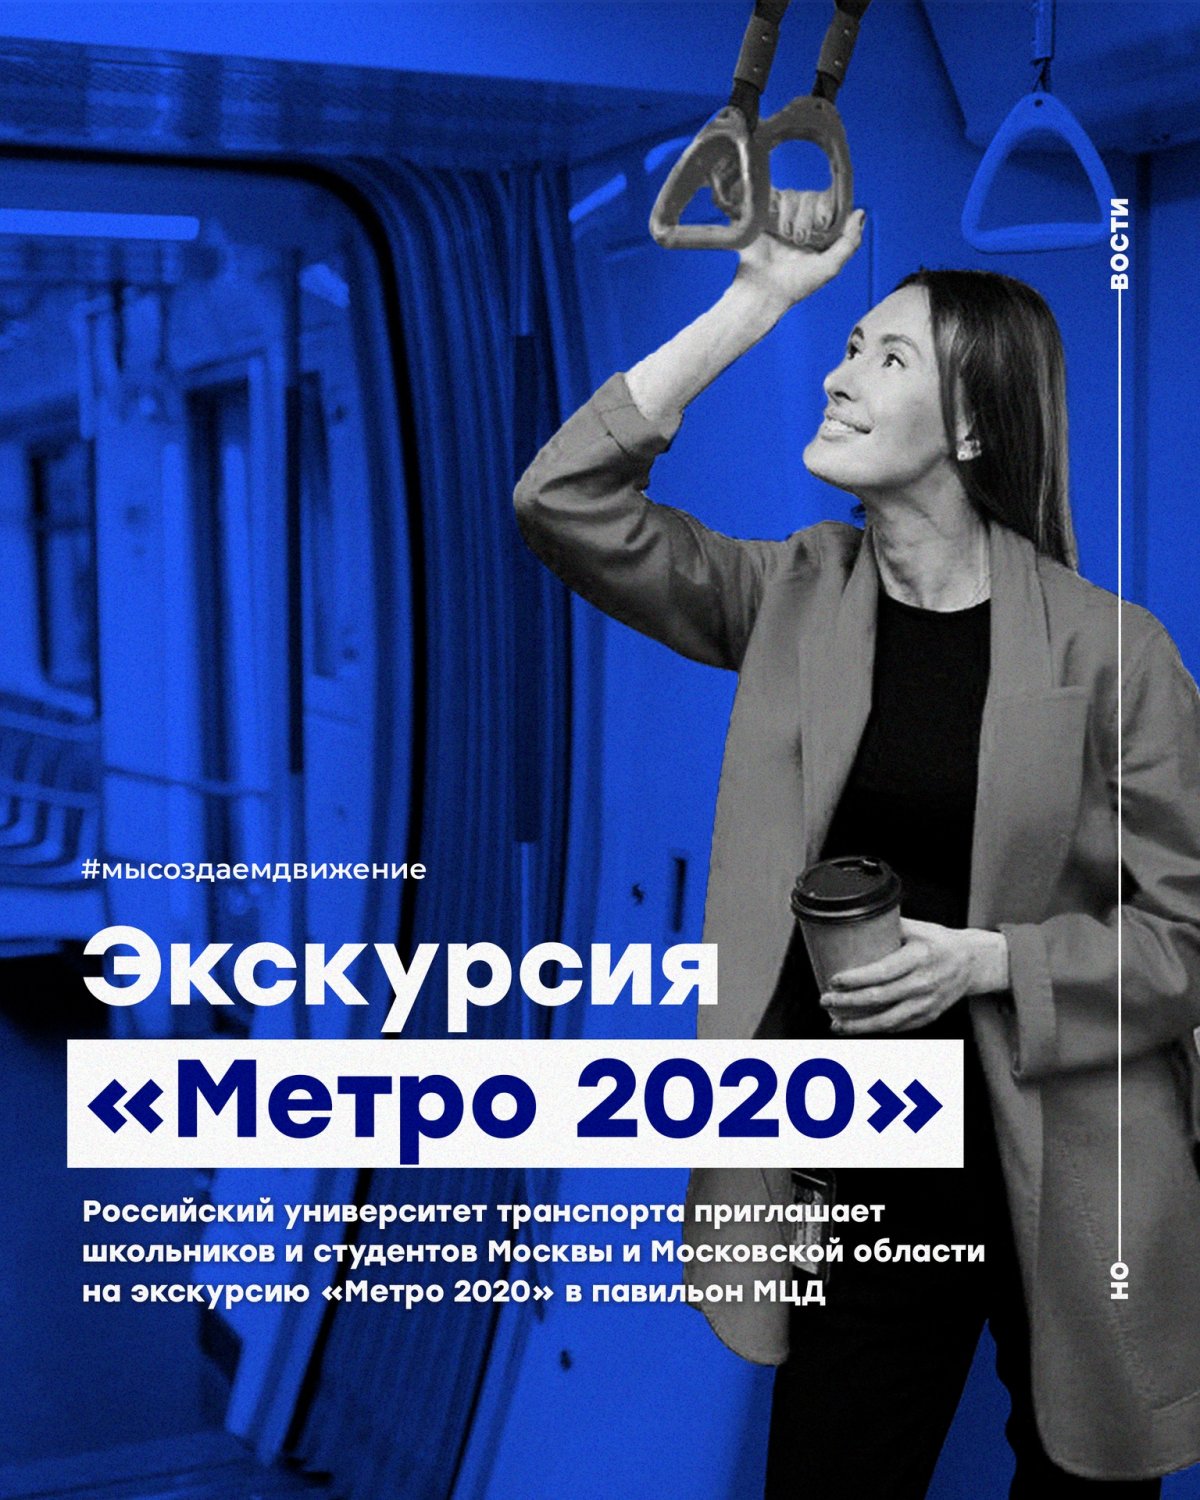 Российский университет транспорта приглашает школьников и студентов Москвы и Московской области на экскурсию «Метро 2020» в павильон МЦД